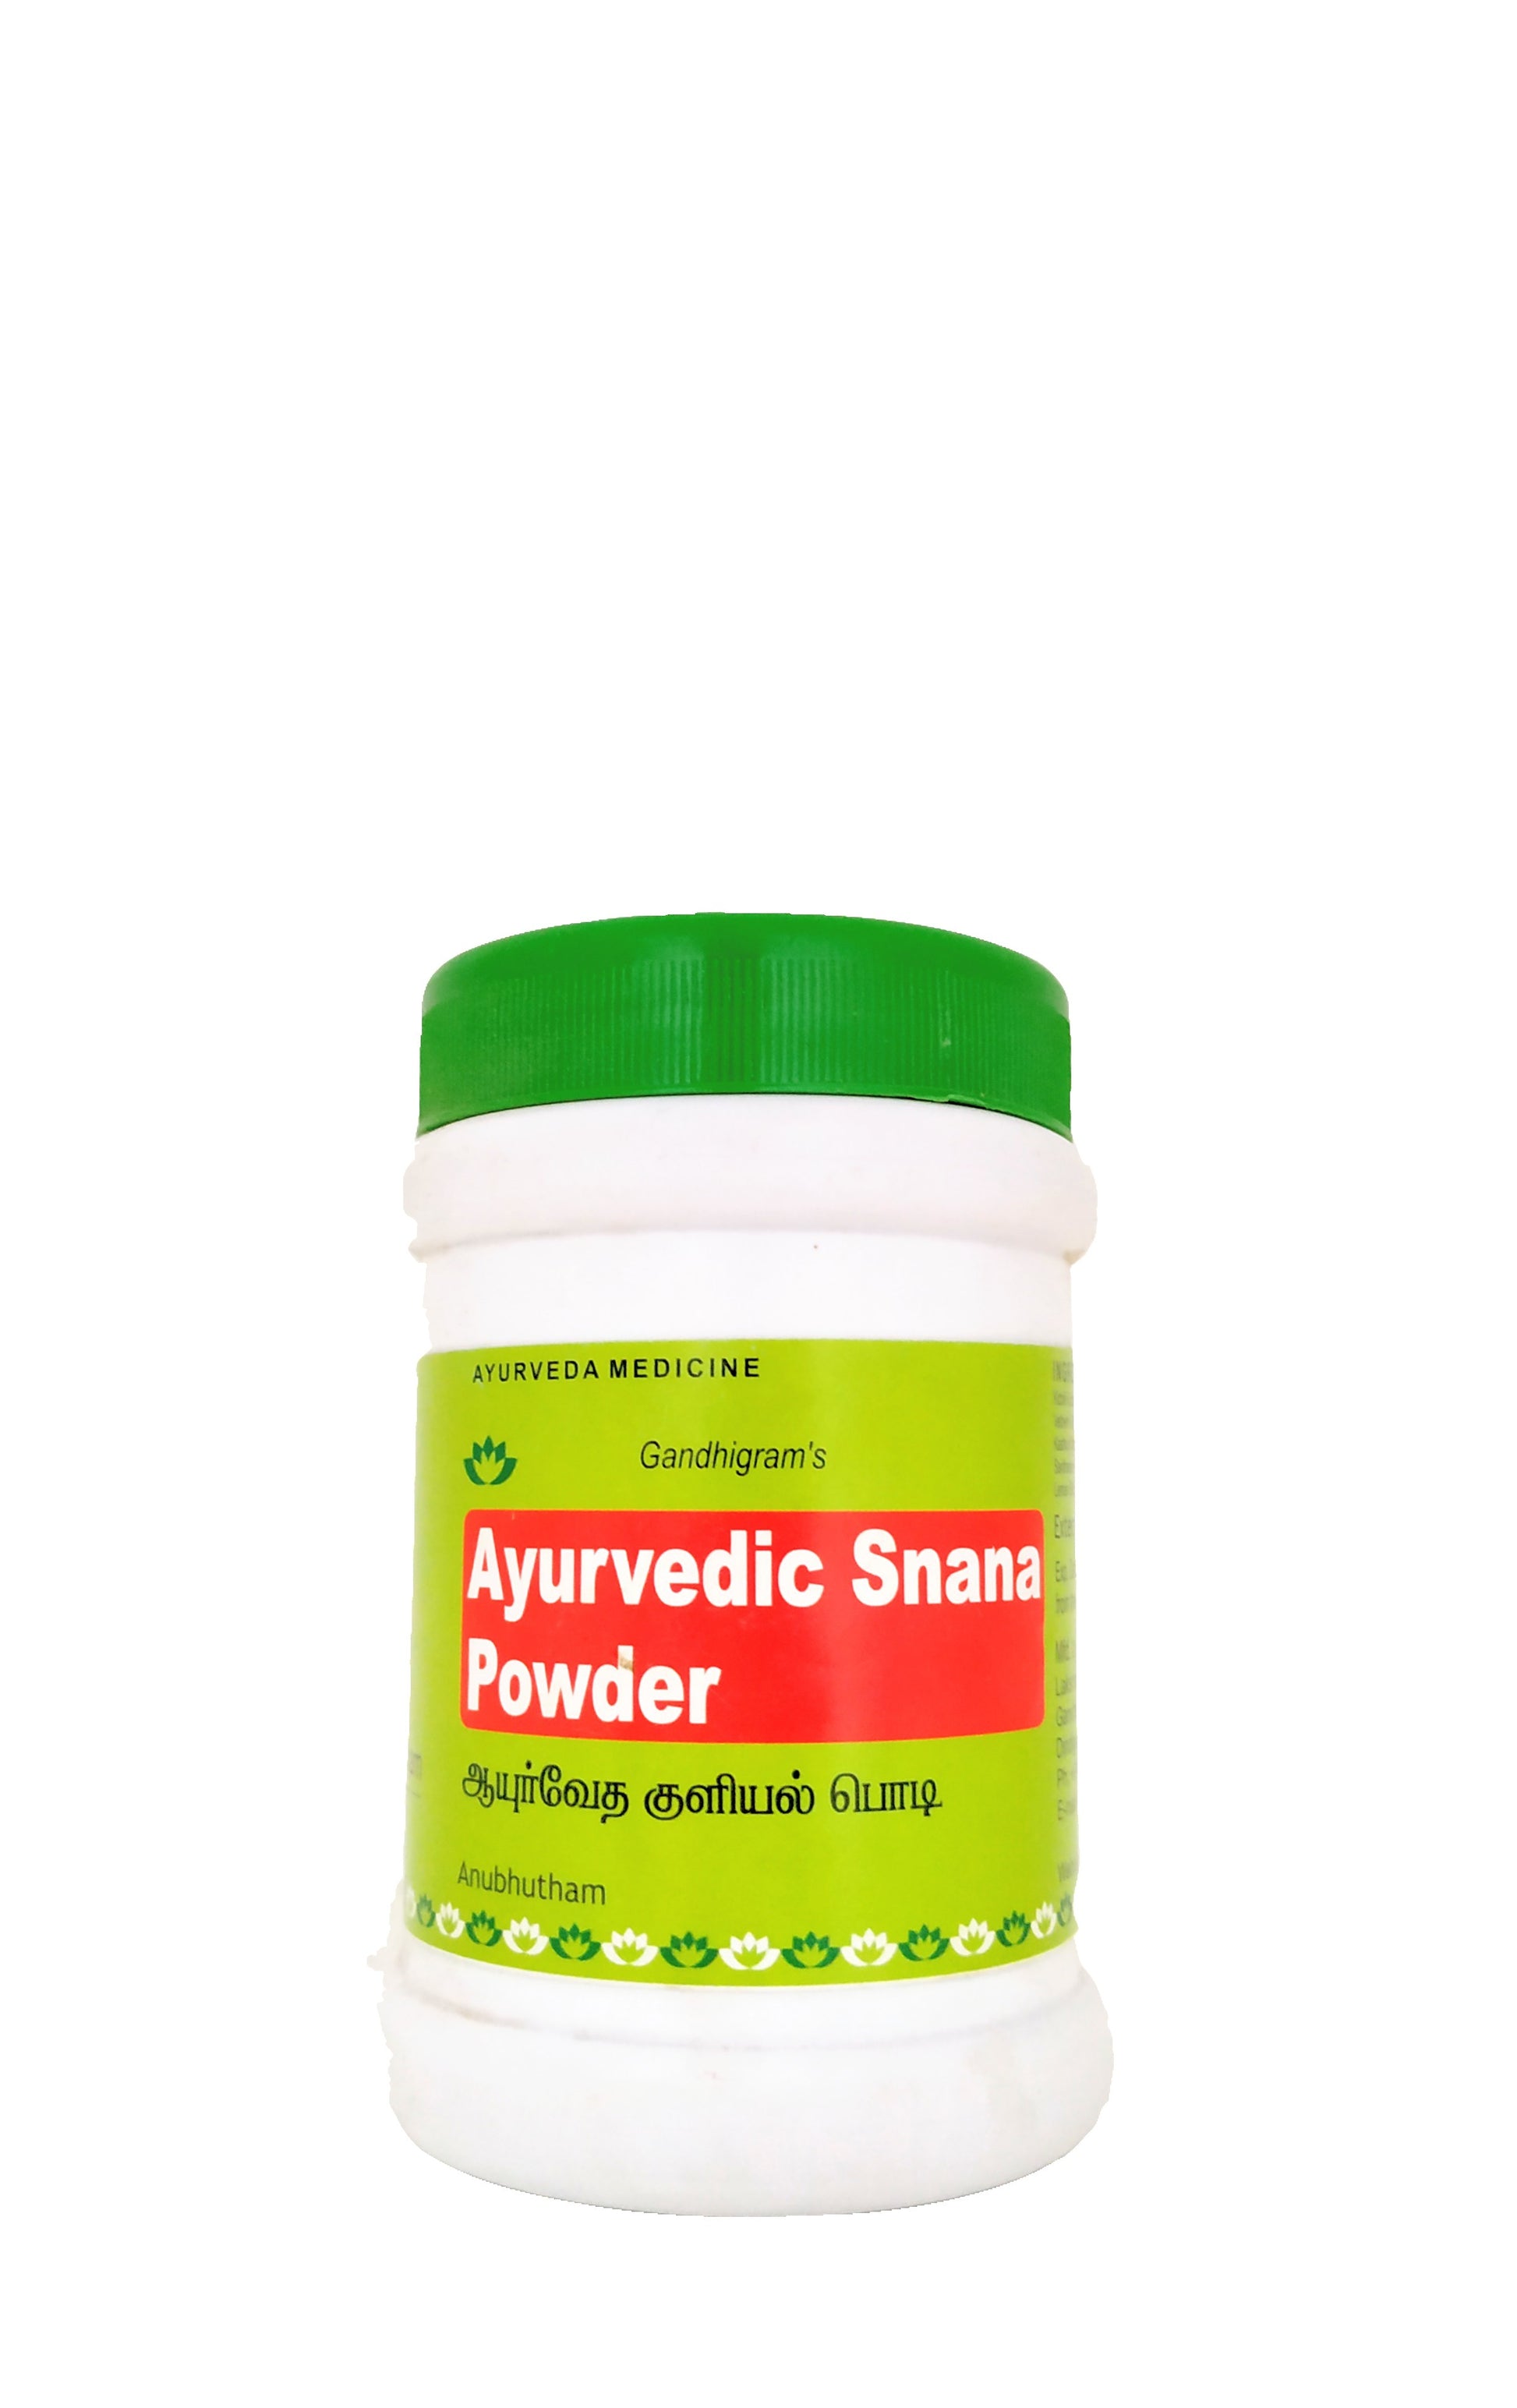 Ayurvedic snana powder 100gm (bath powder) Lakshmi Seva Sangham